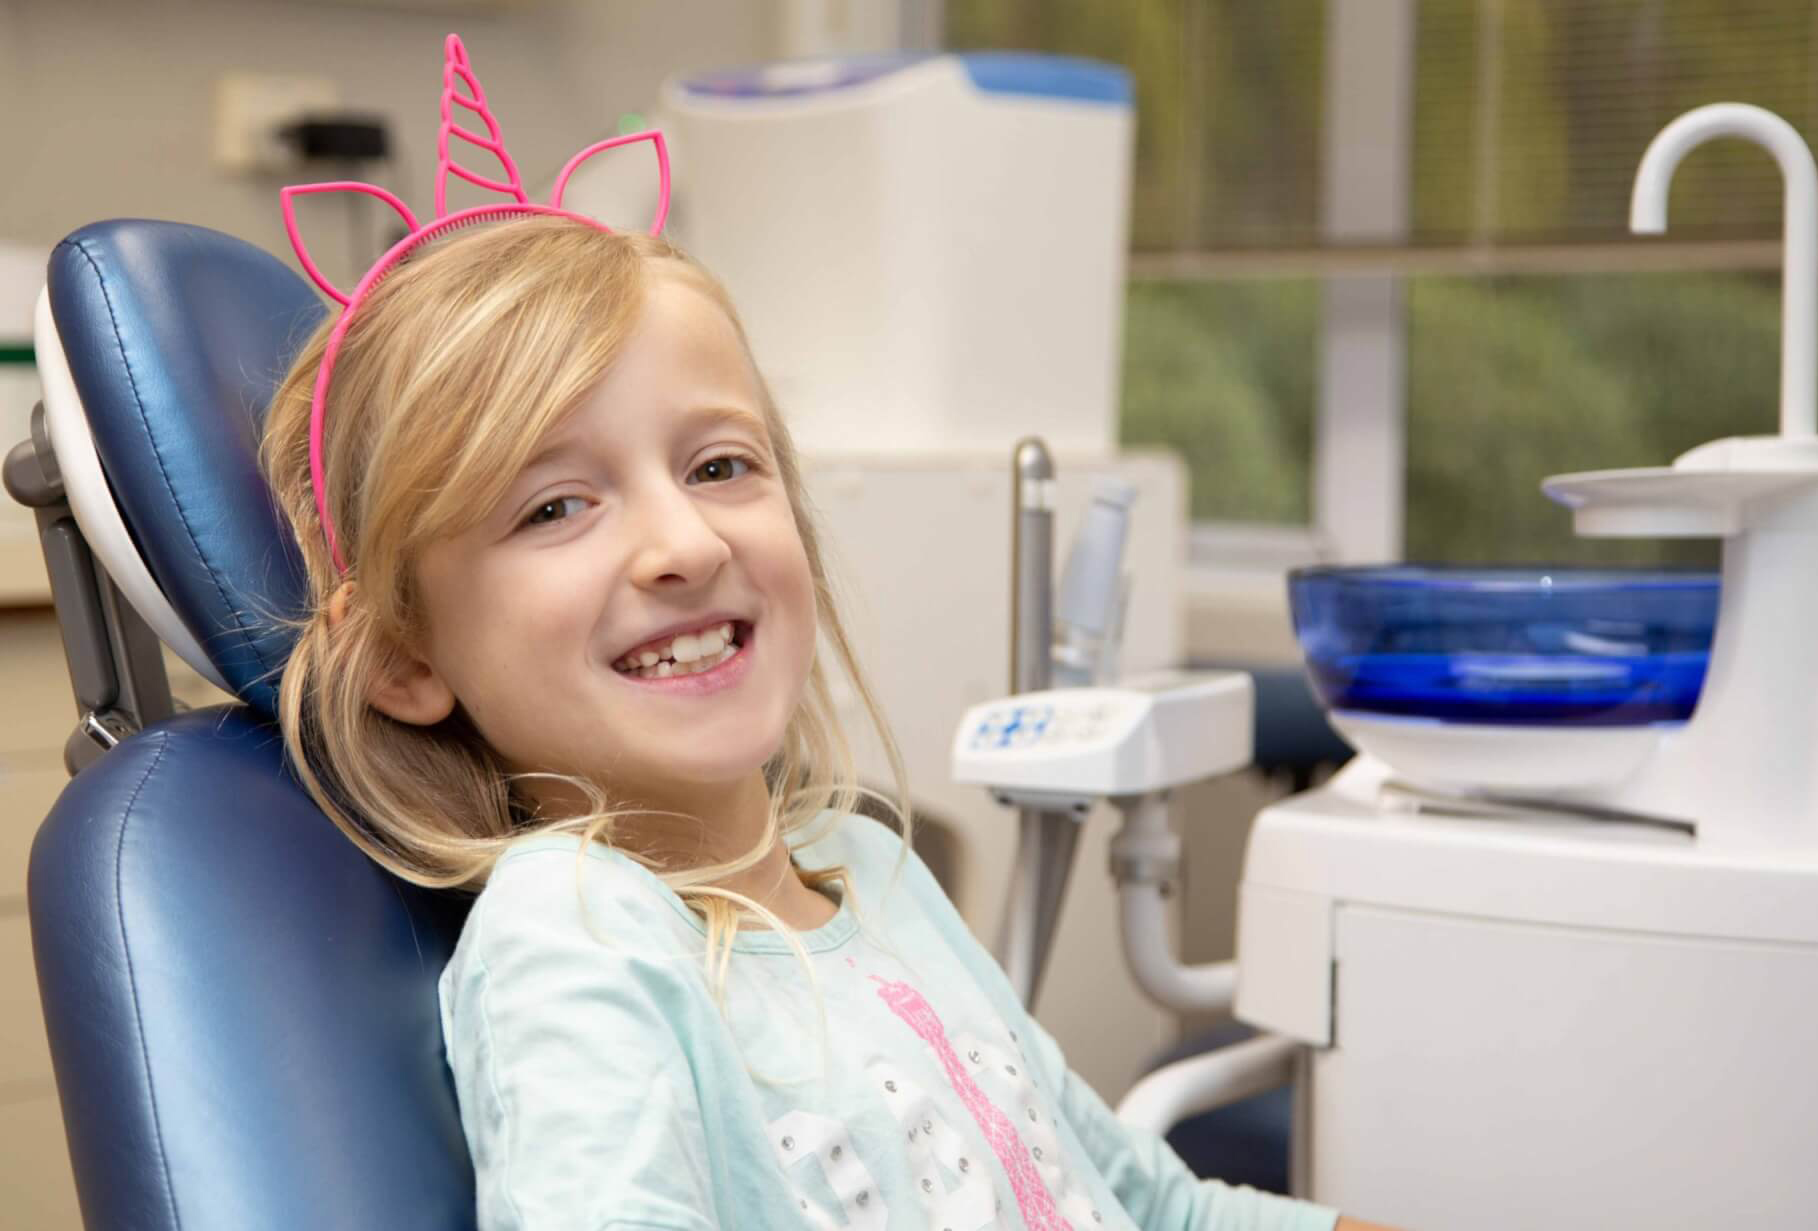 orthodontics for kids, girl in dentist chair